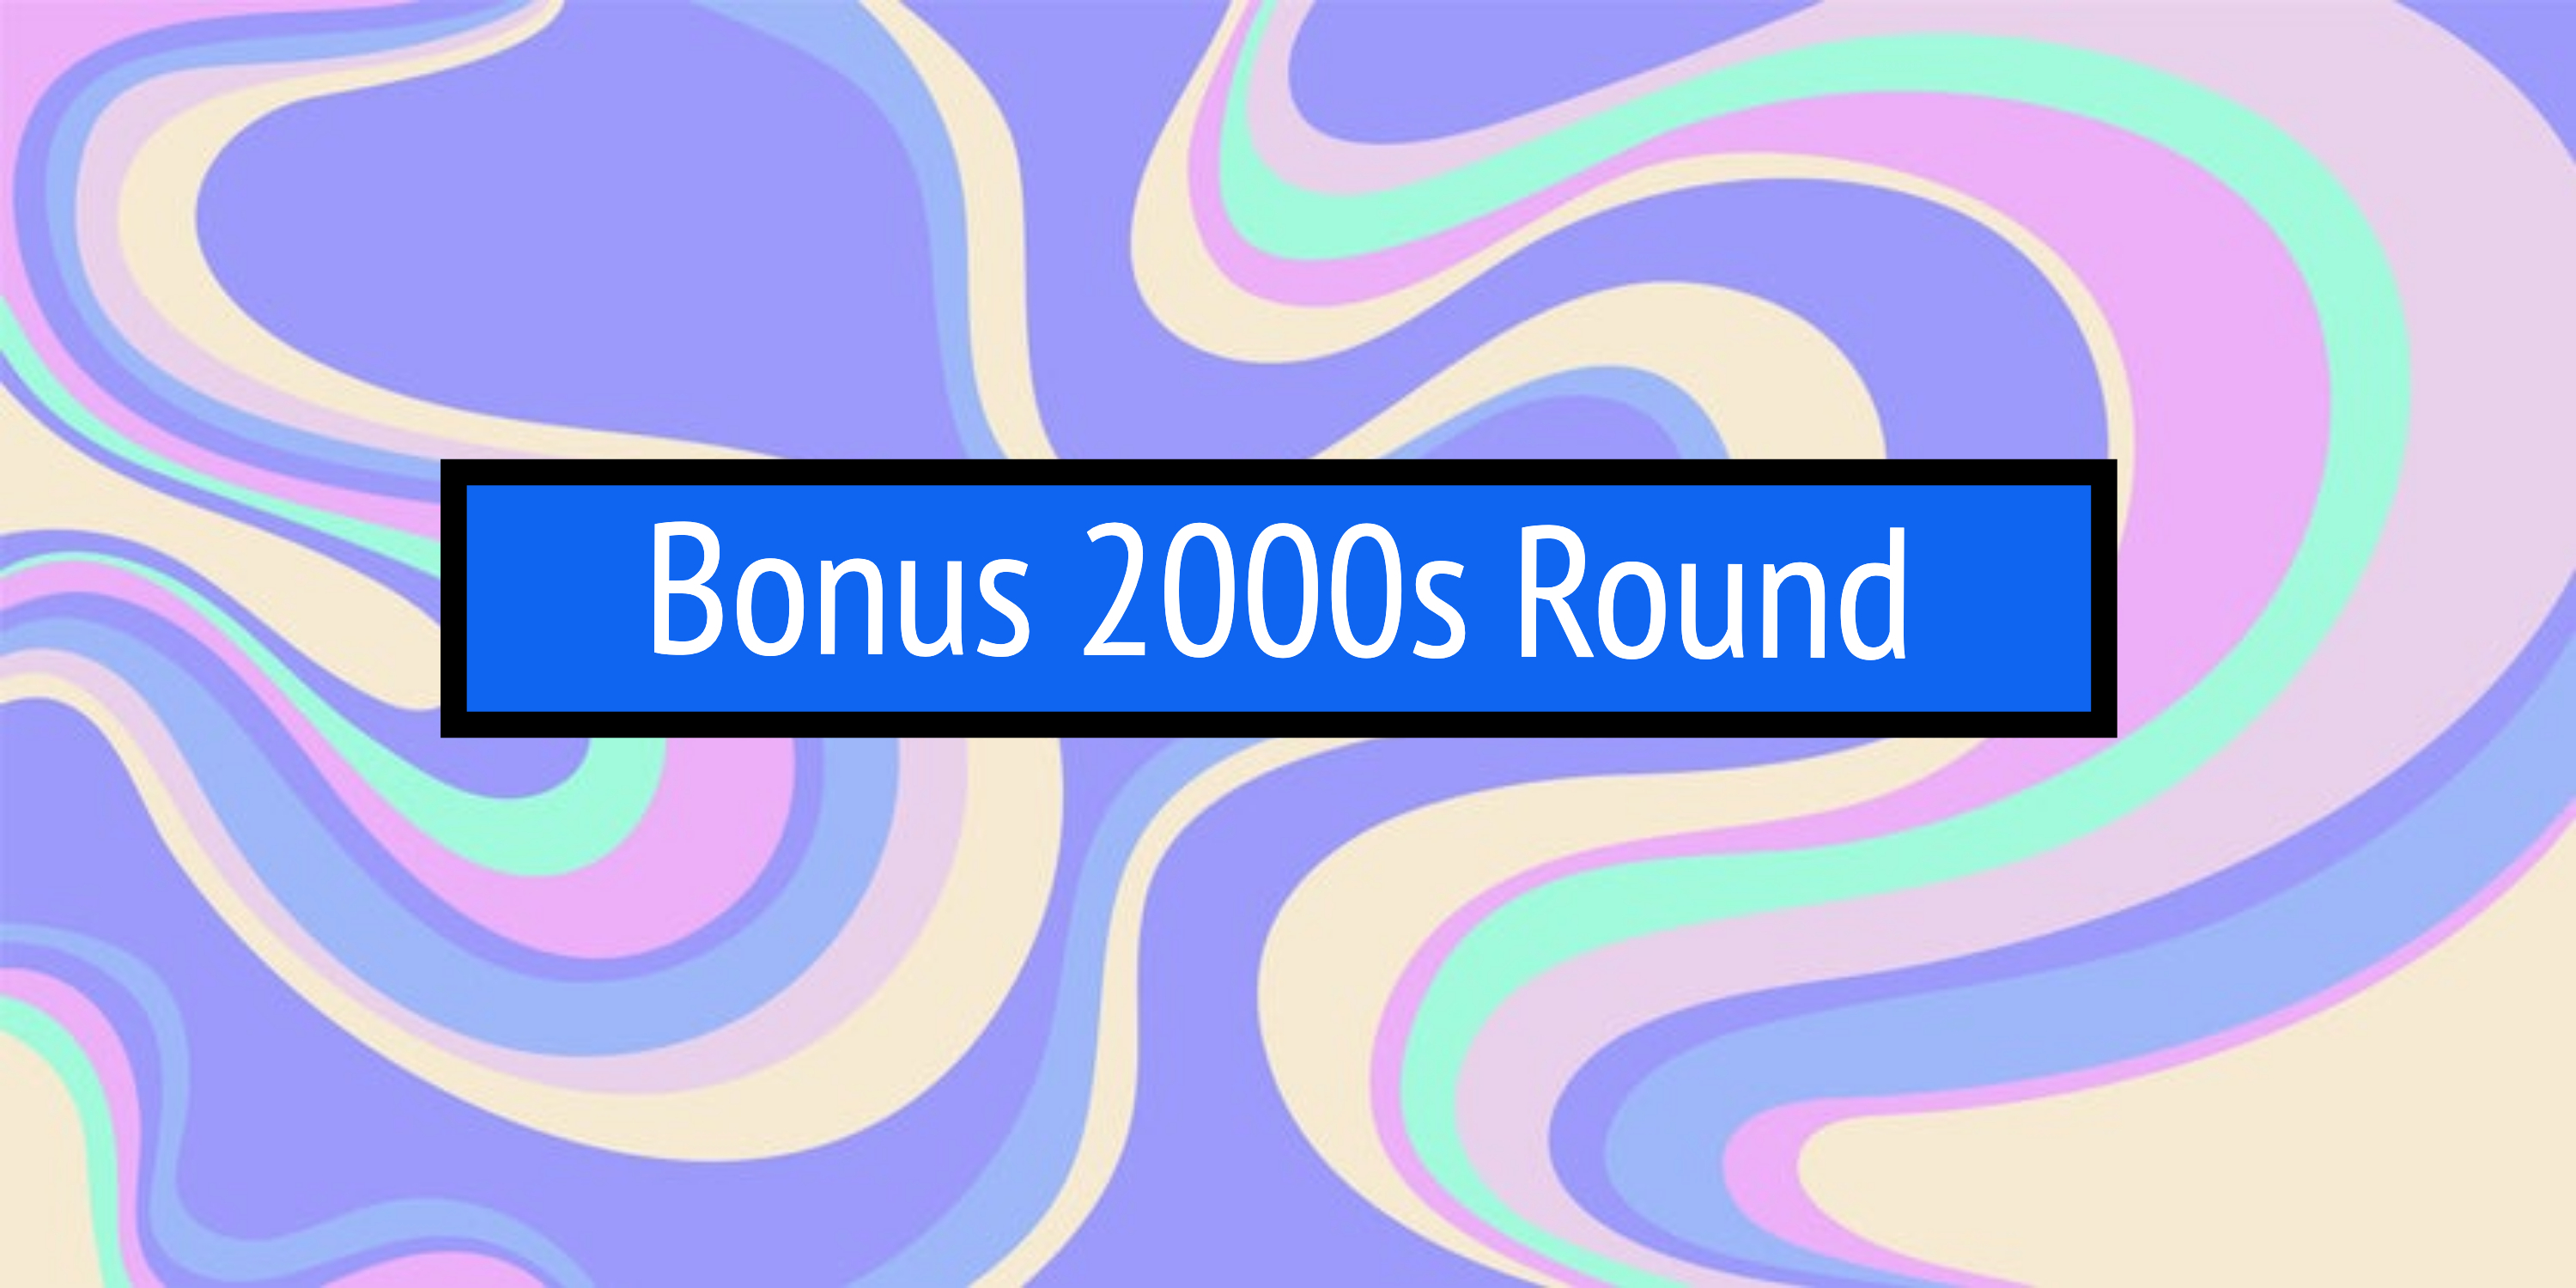 Bonus 2000s Round